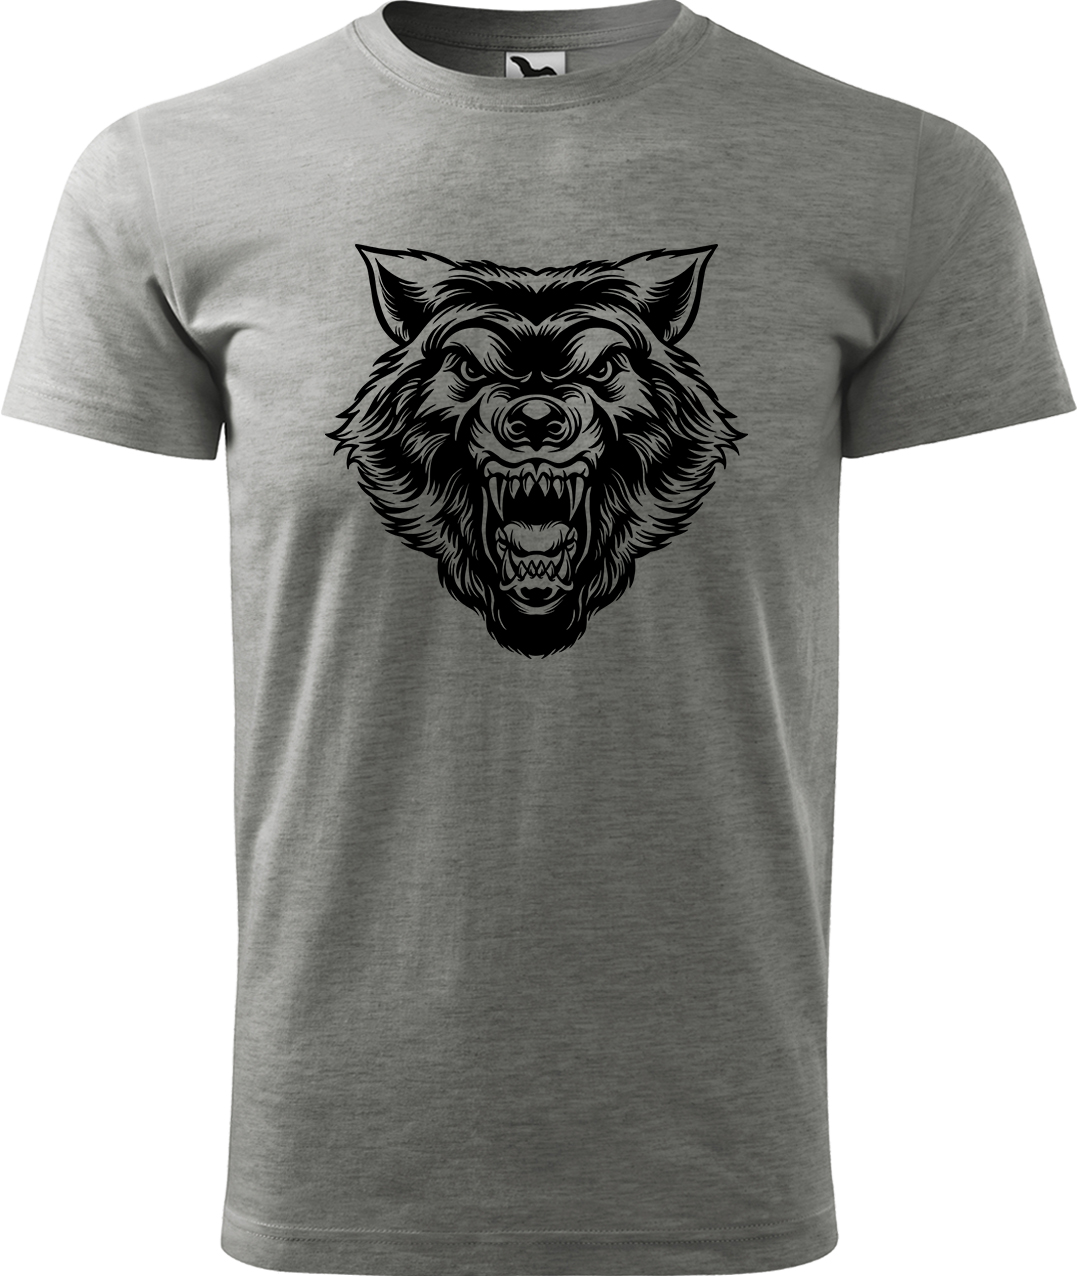 Pánské tričko s vlkem - Rozzuřený vlk Velikost: L, Barva: Tmavě šedý melír (12), Střih: pánský